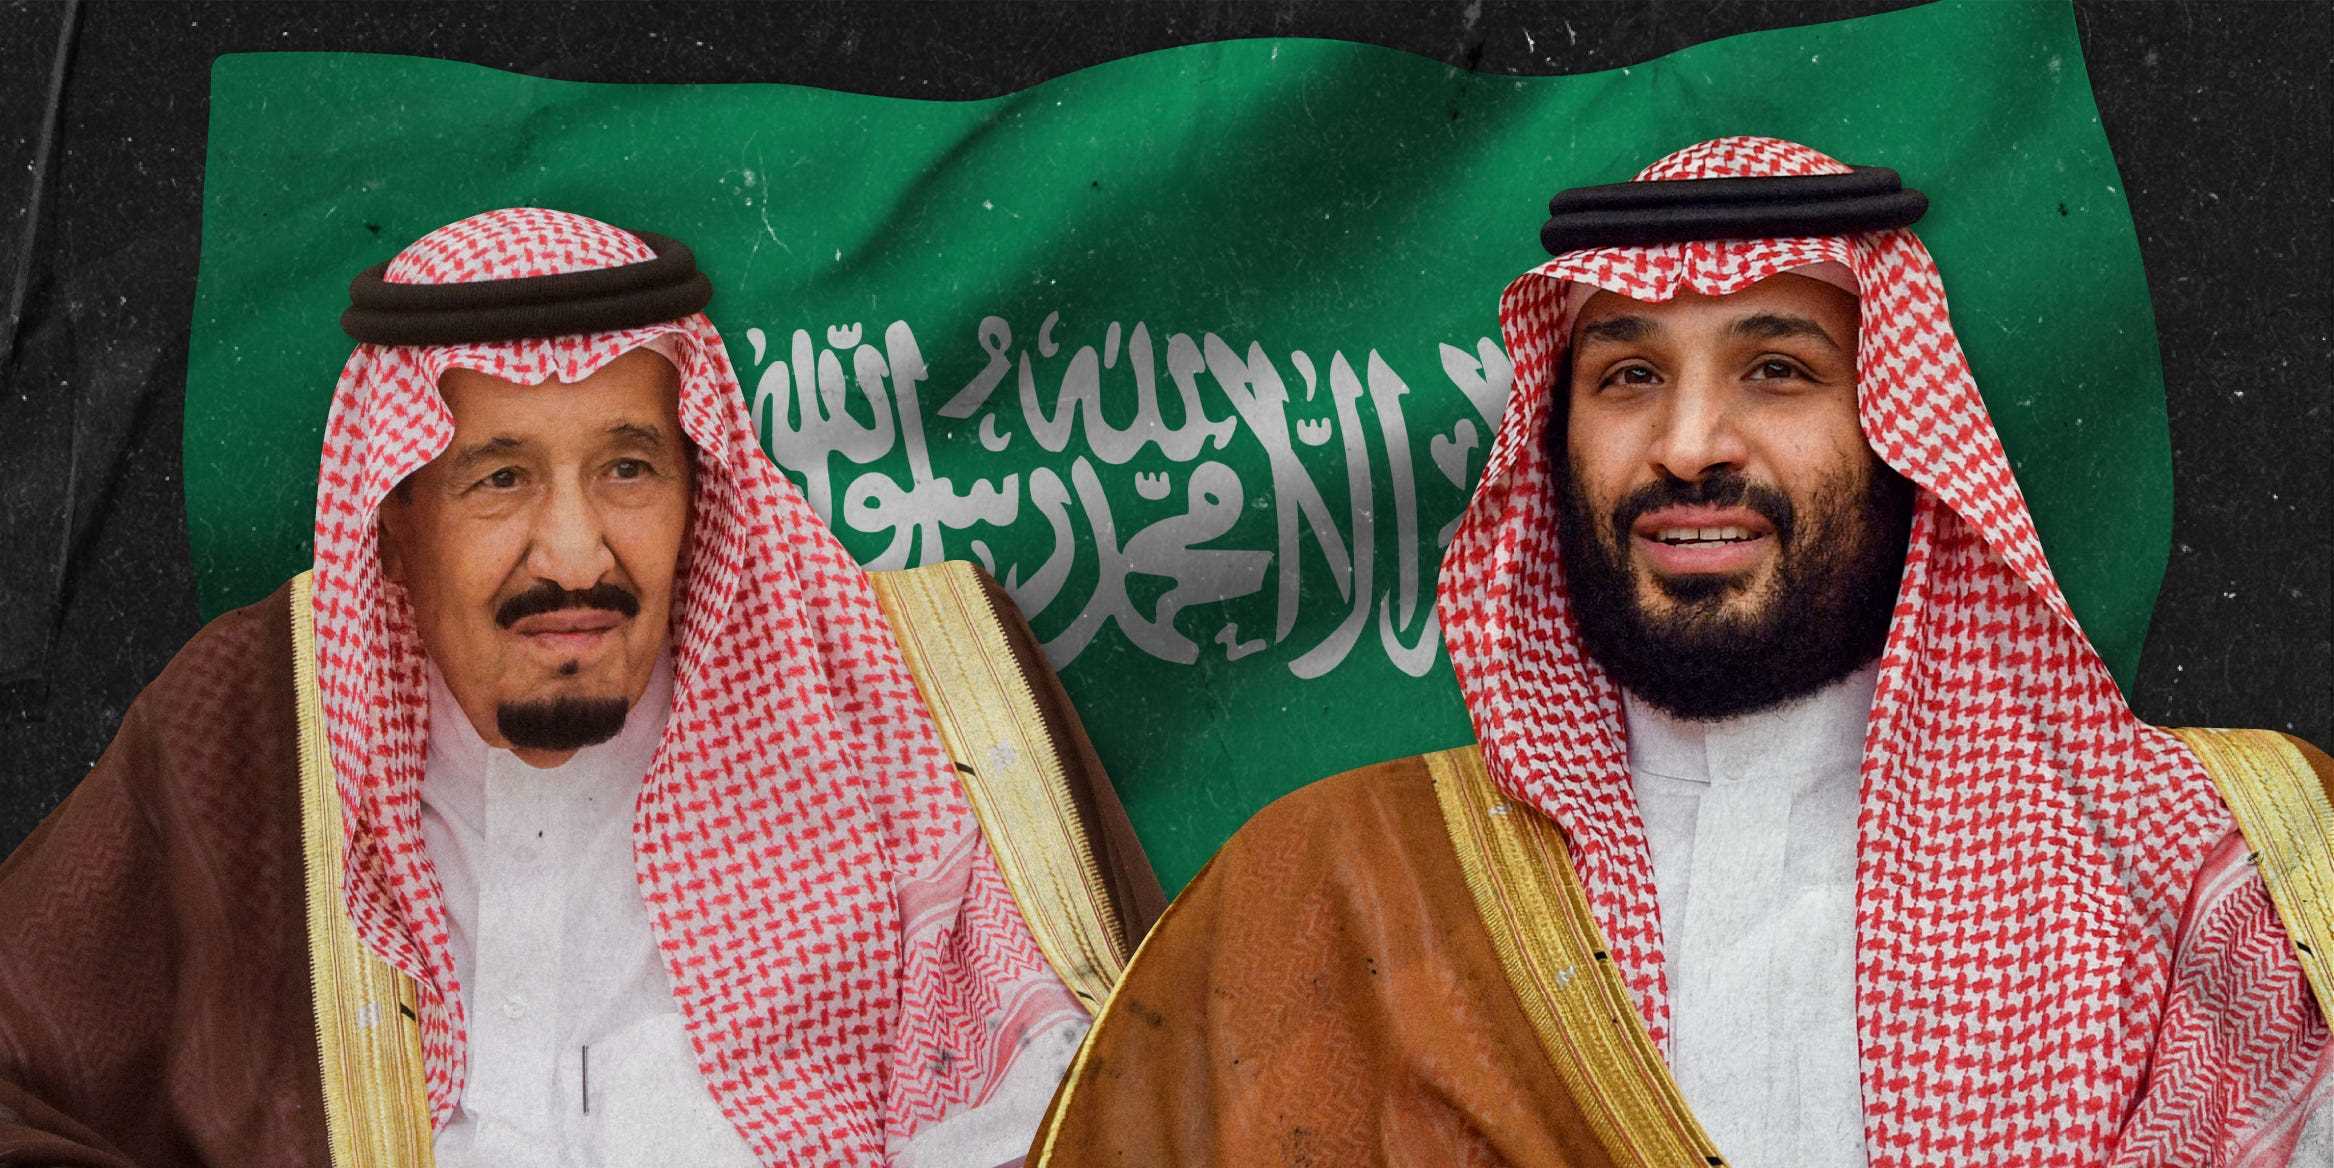 Fotos von König Salman Mikhail Metzel und Mohammed bin Salman vor der saudi-arabischen Flagge 2x1